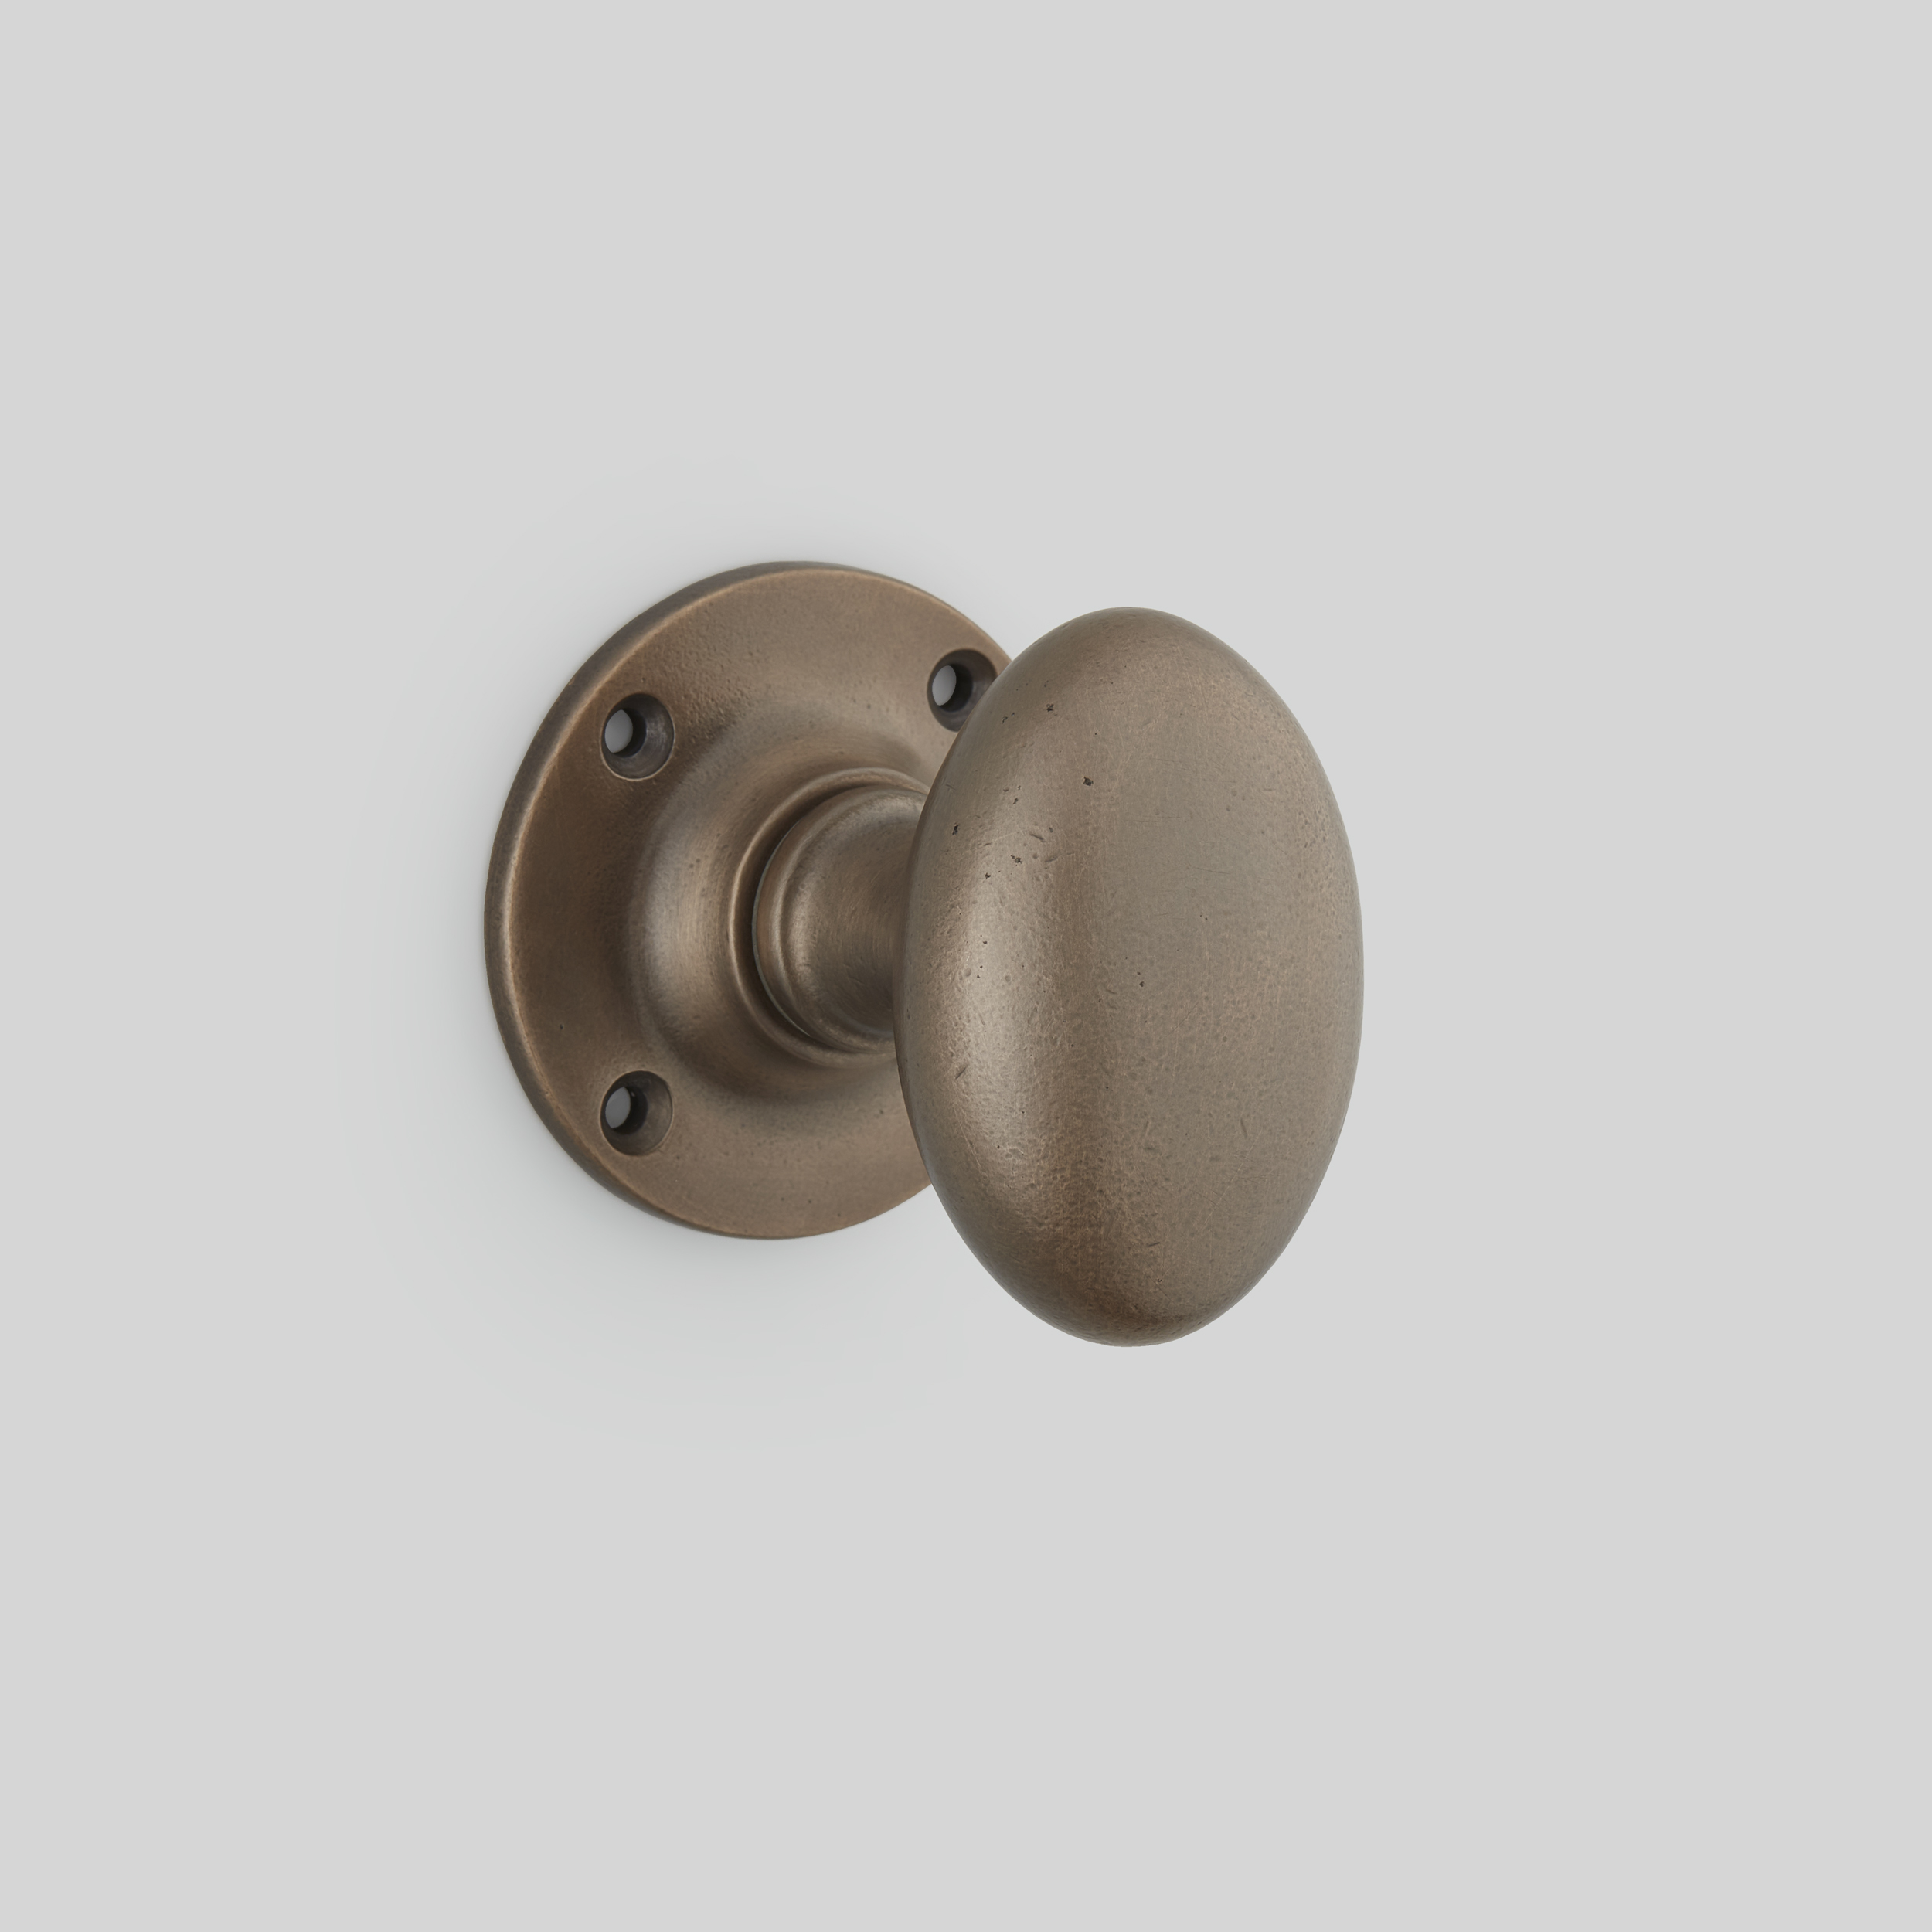 Croft 4165 4165R Oval Mortice Or Rim Door Knobs in Brass Bronze Chrome or  Nickel, Door handles & door accessories